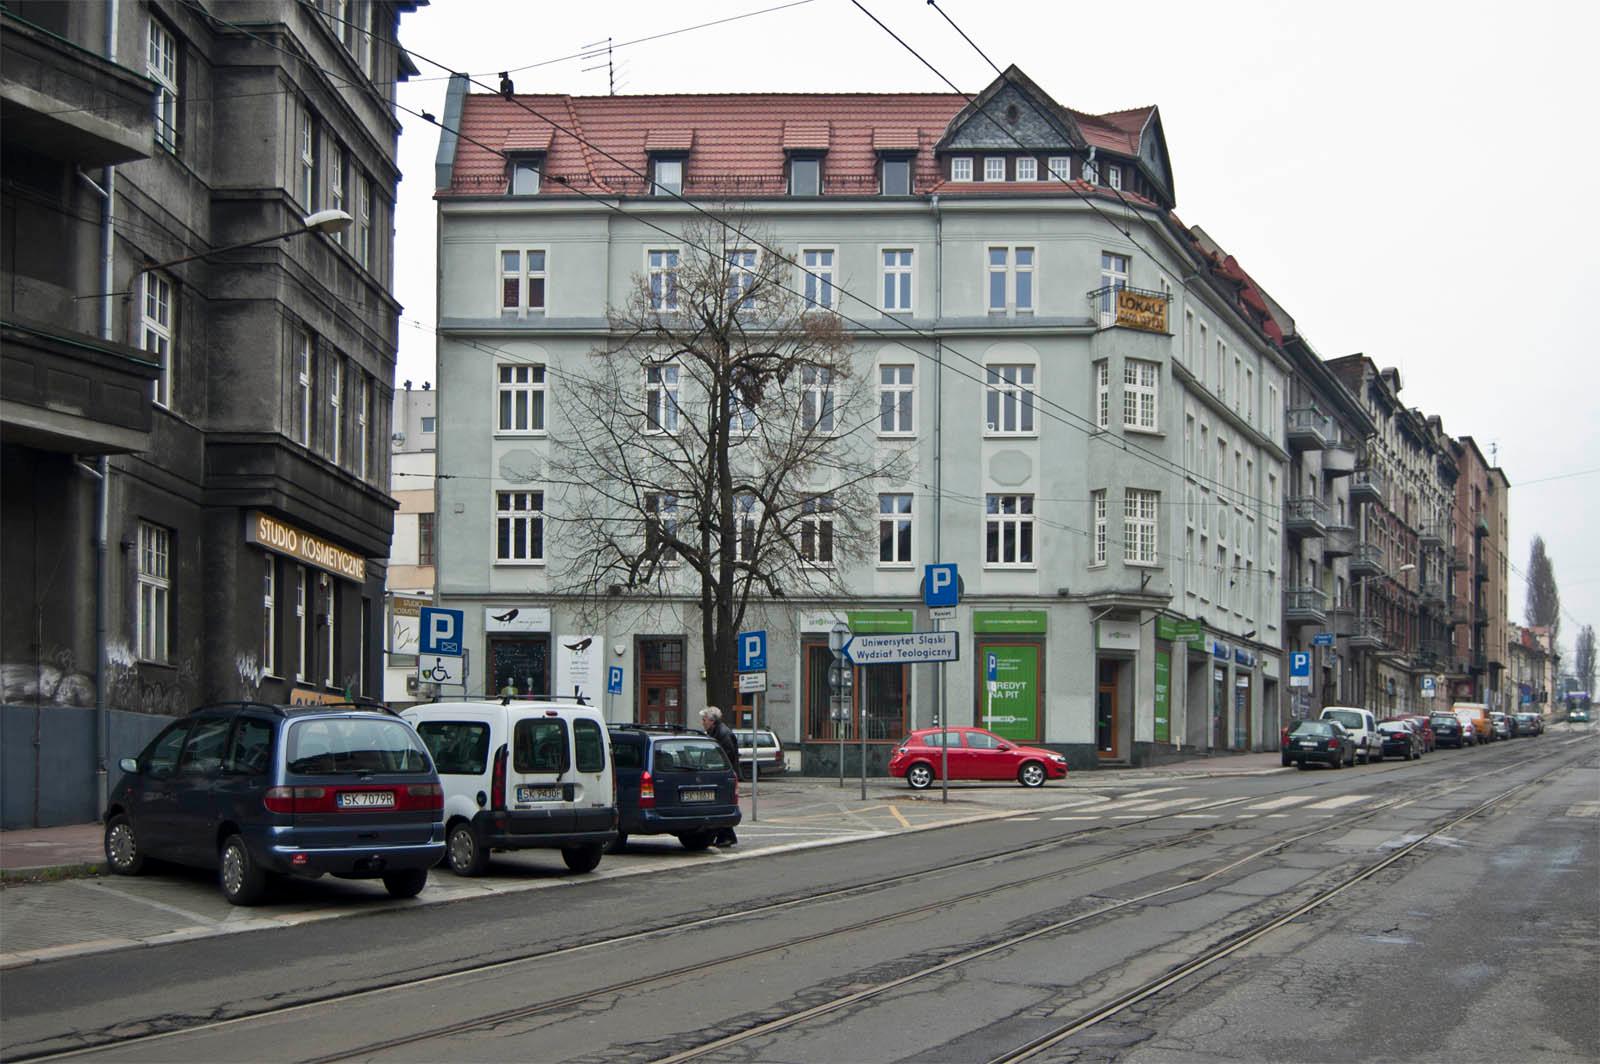 Ulica z torami tramwajowymi i budynkami